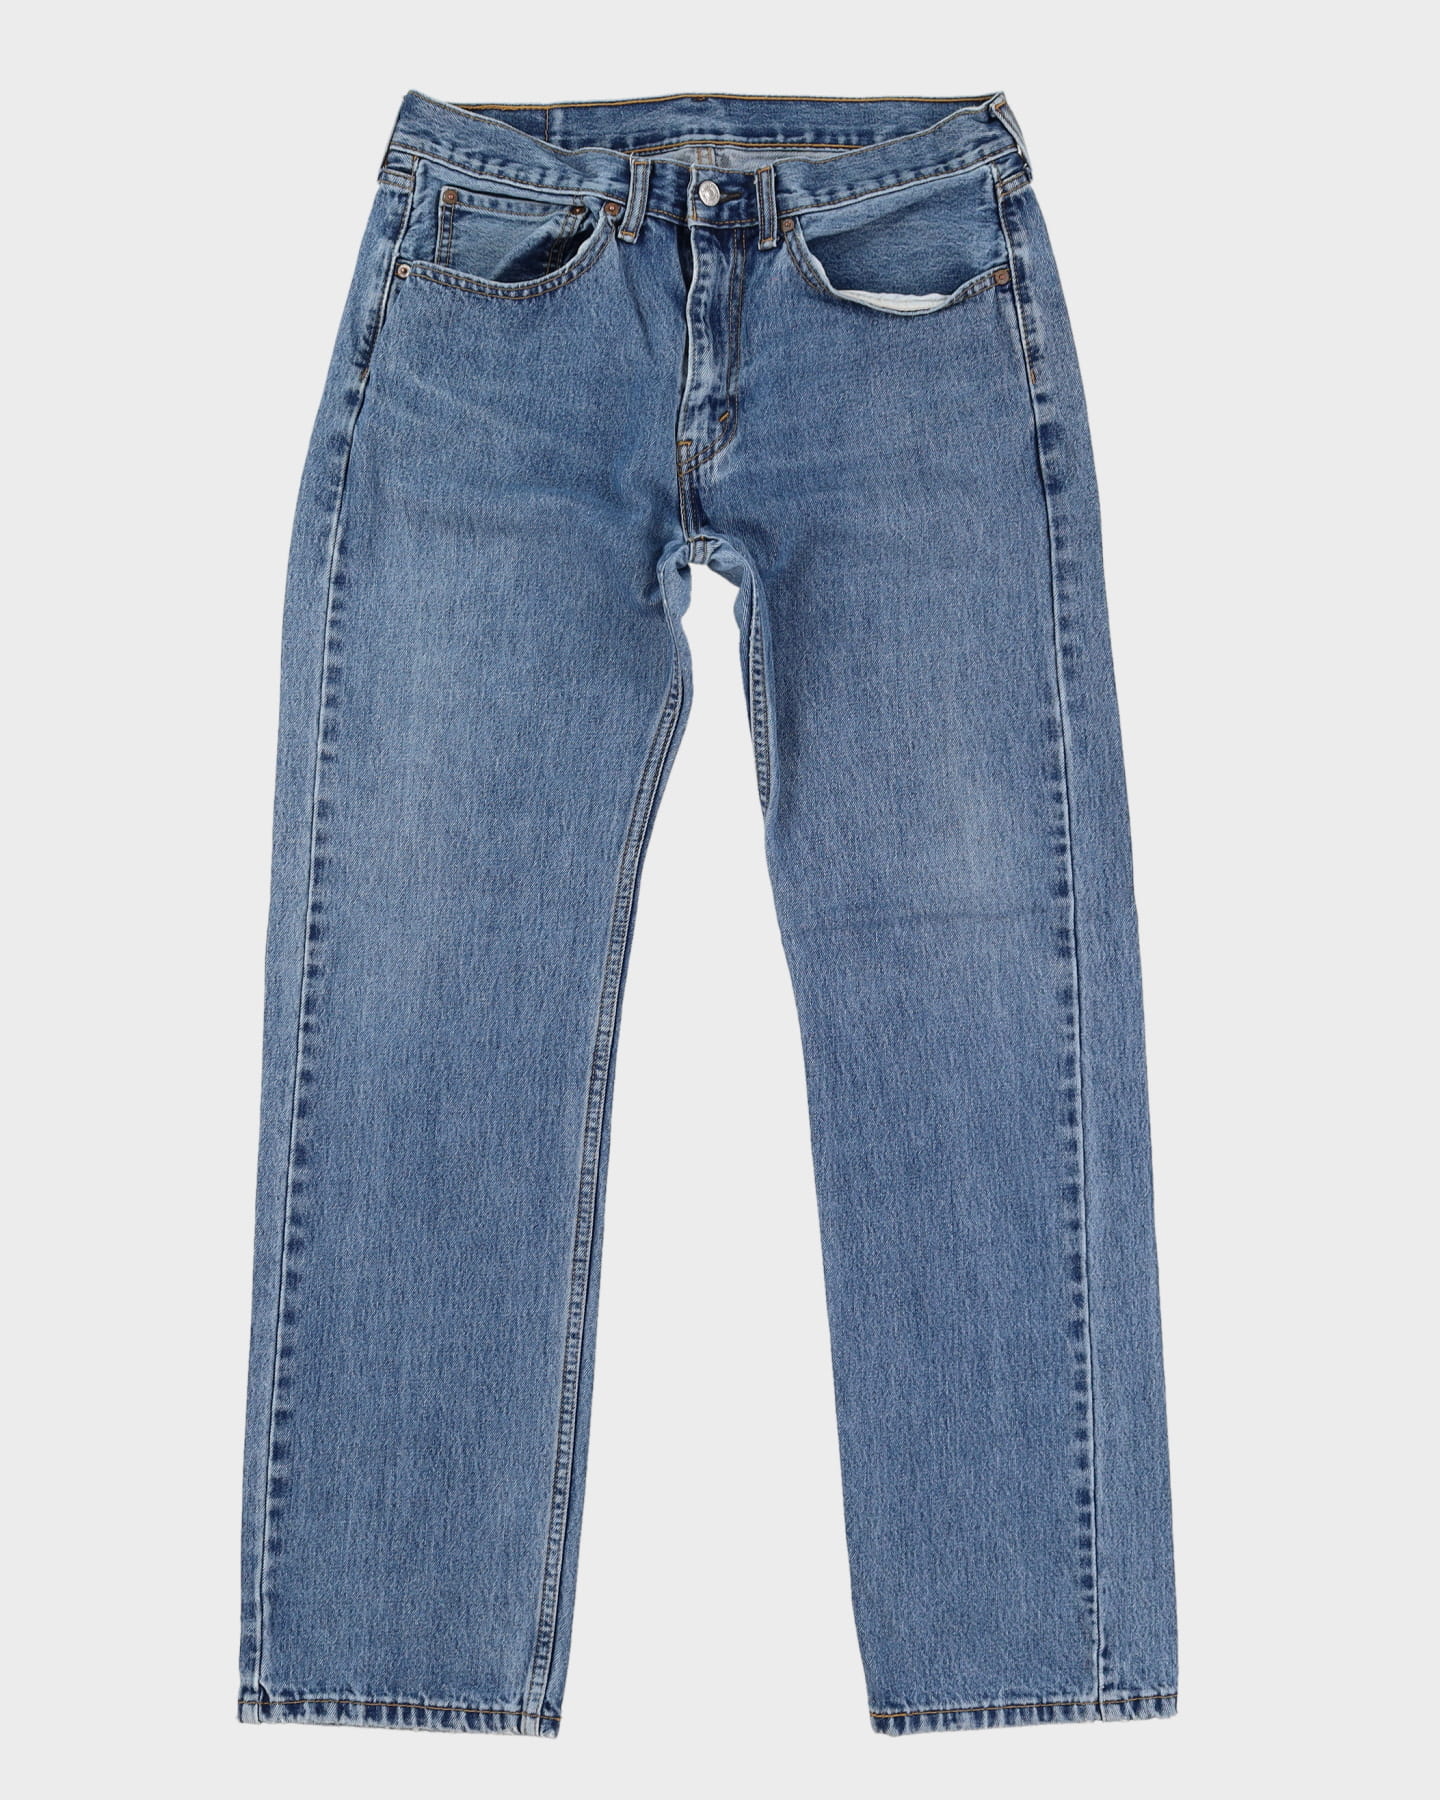 Levi's 505 Blue Jeans - W34 L32